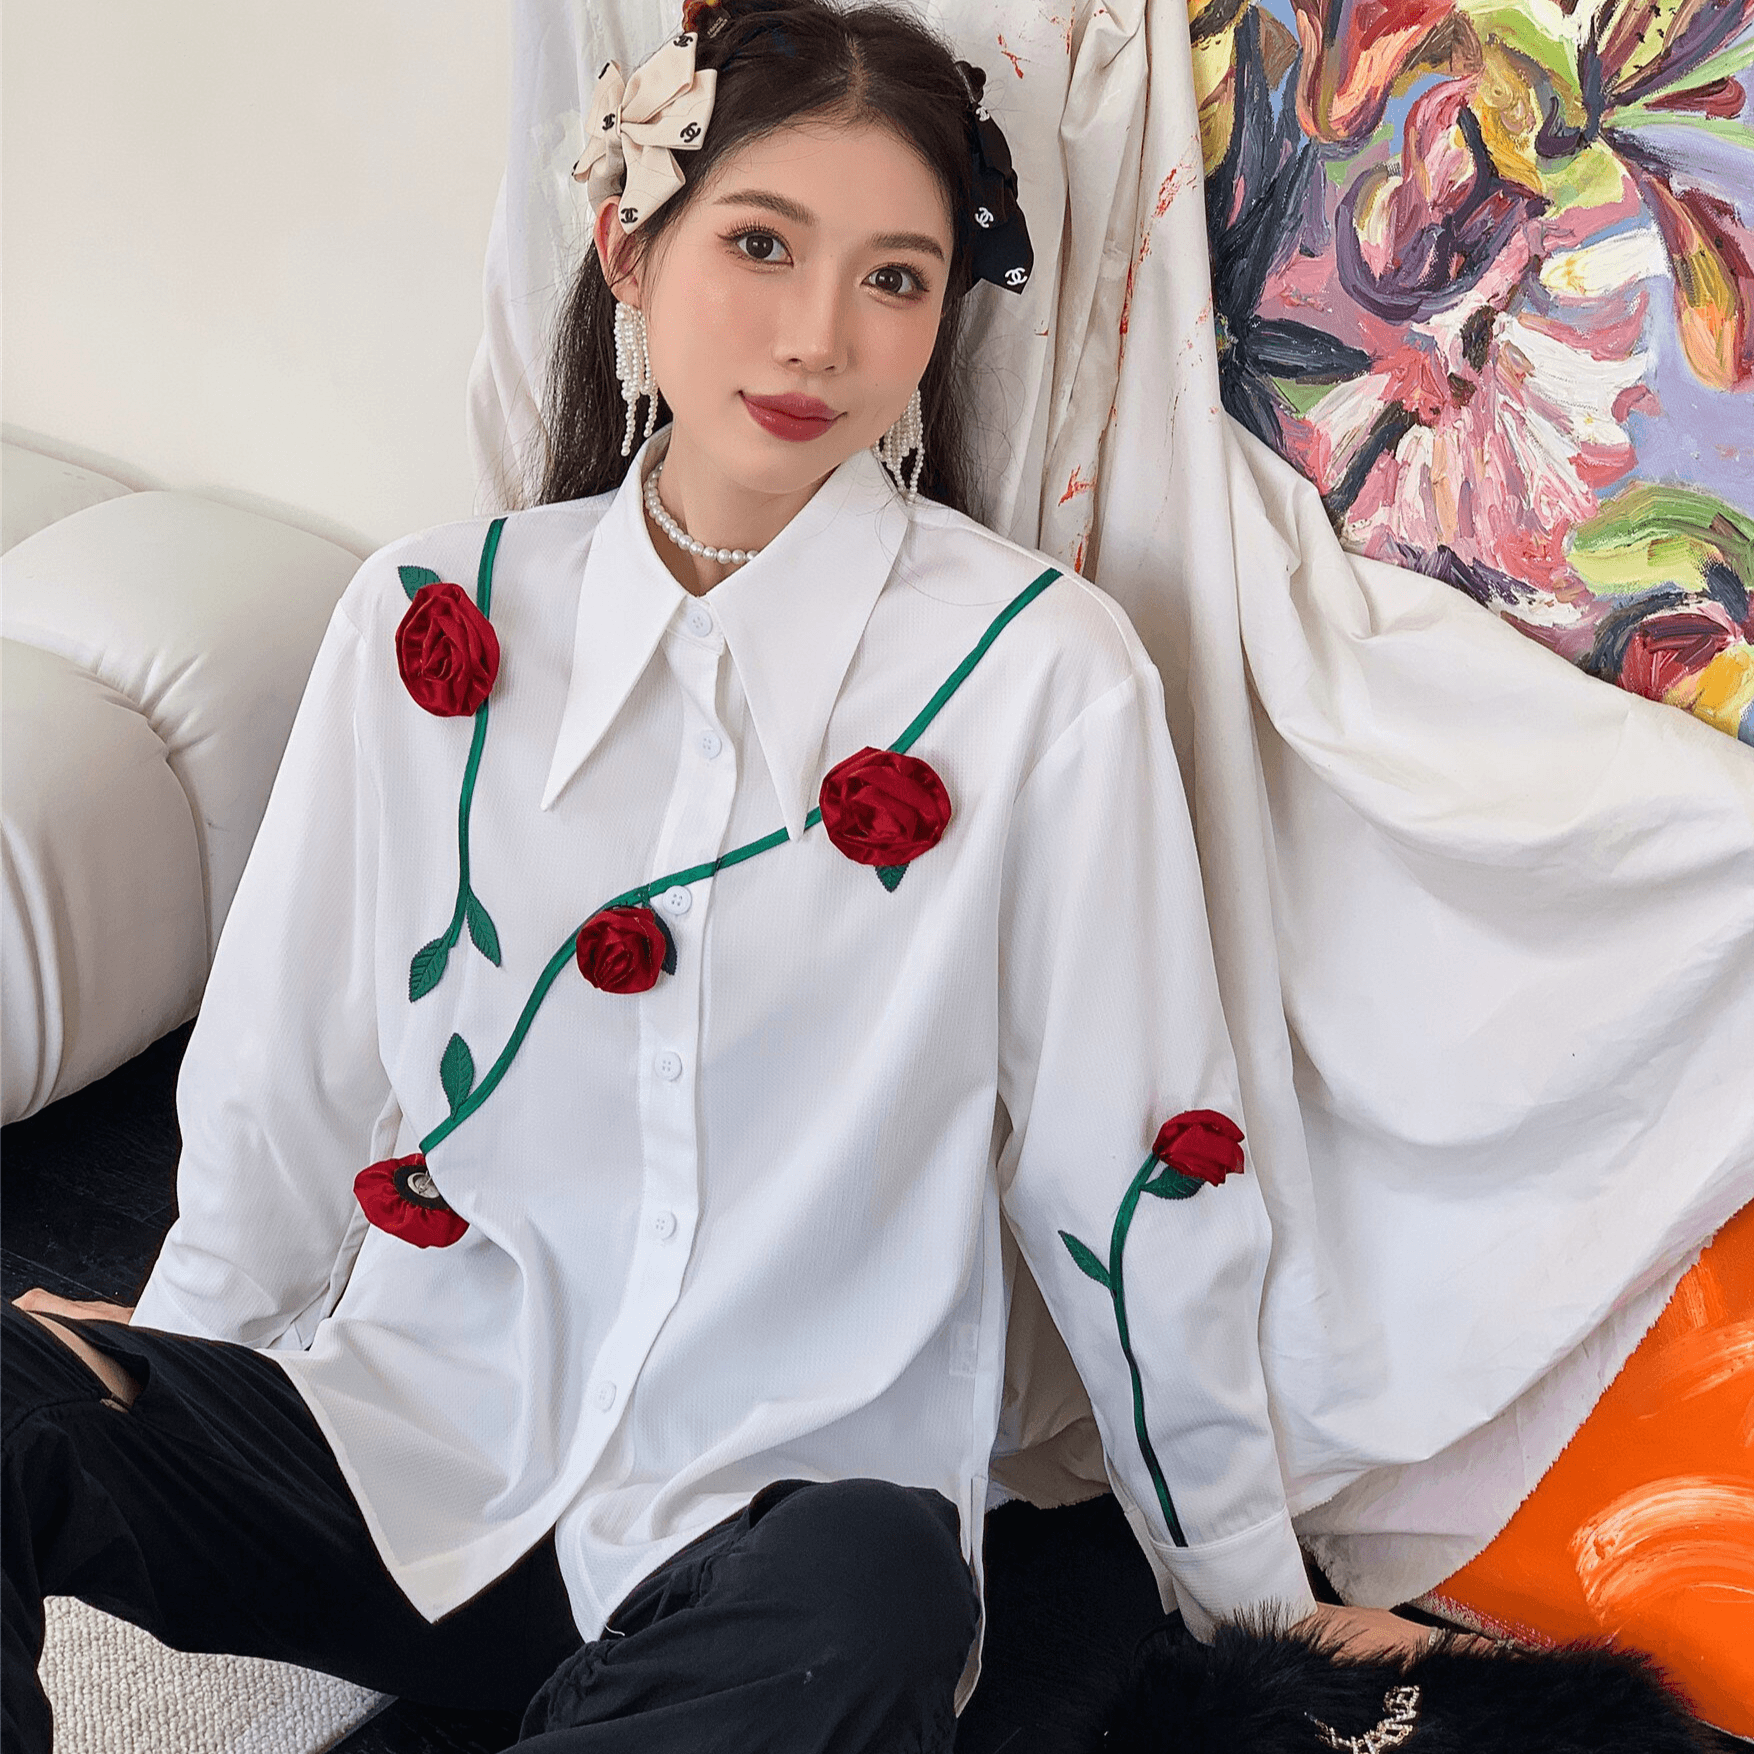 מכופתרת לבנה בגימור ורדים אדומים בולאים ללוק נשי חזק ולהופעה אופנתית ייחודית - לה איסלה 